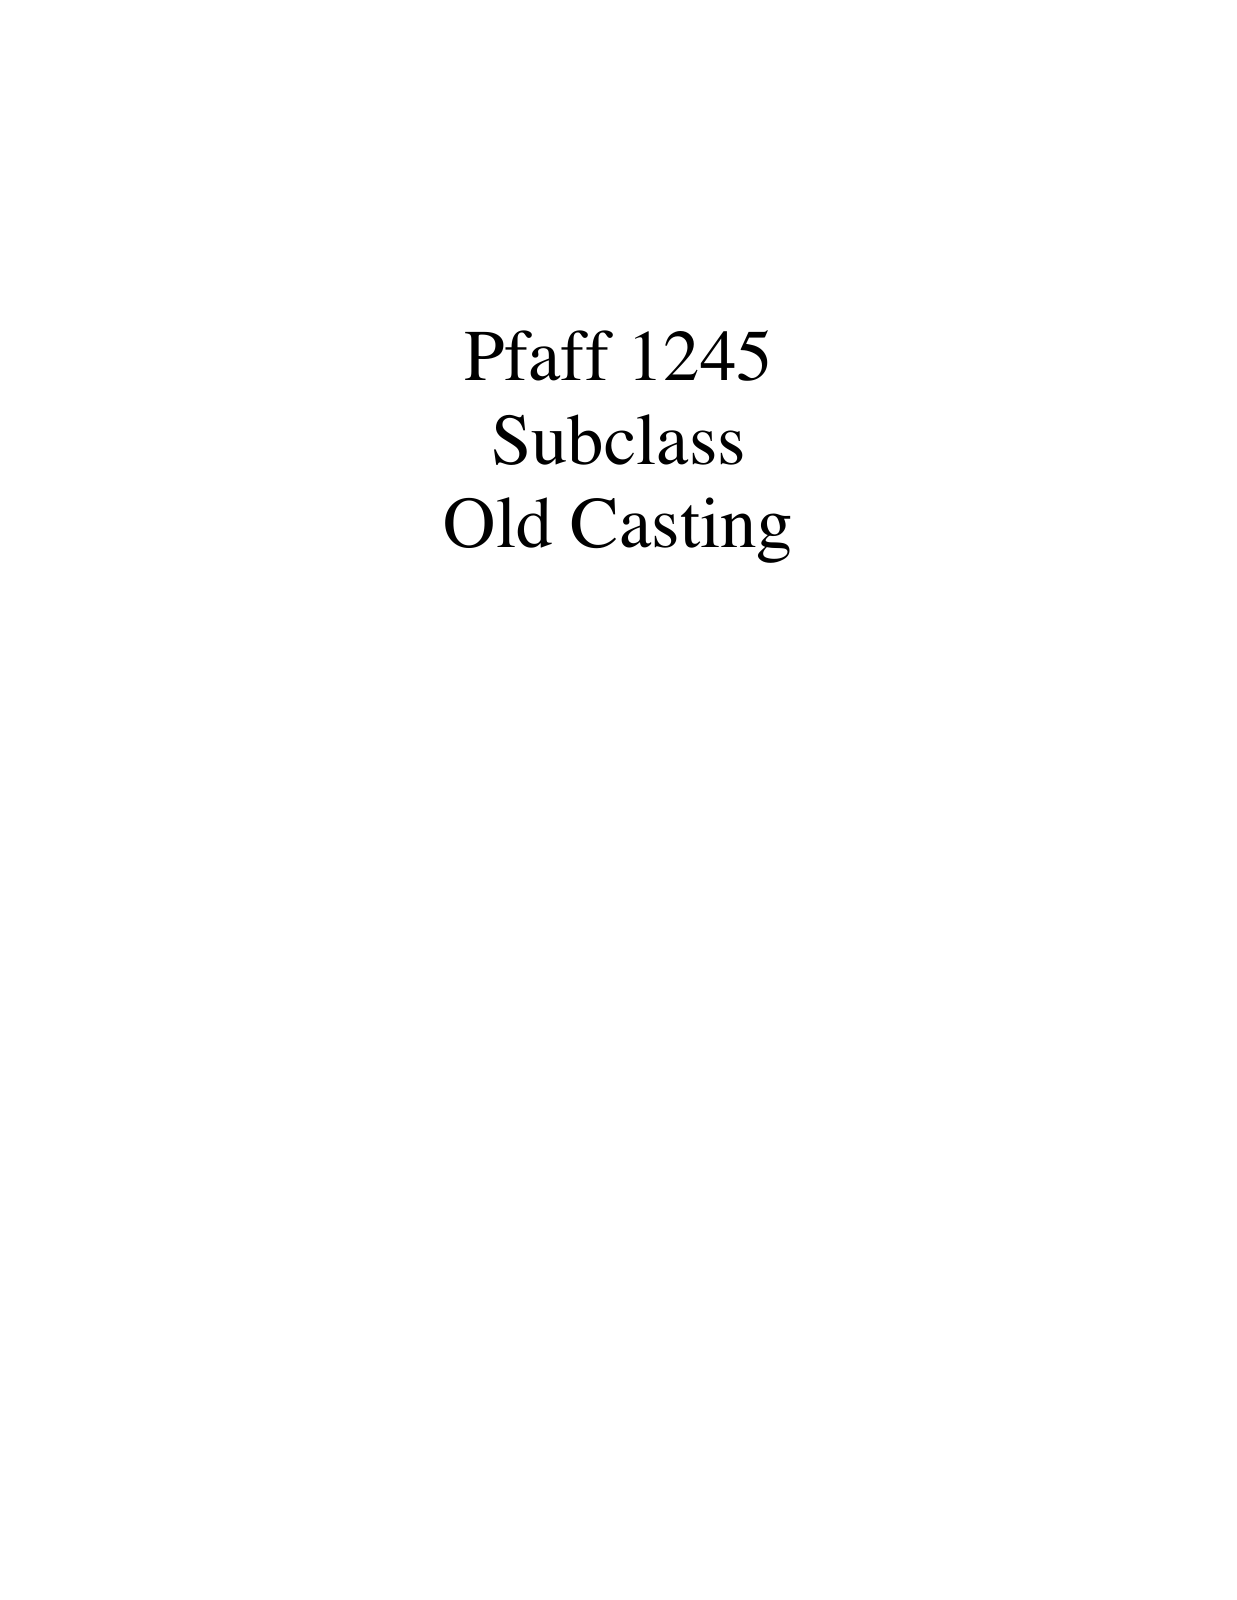 PFAFF 1245 Parts List